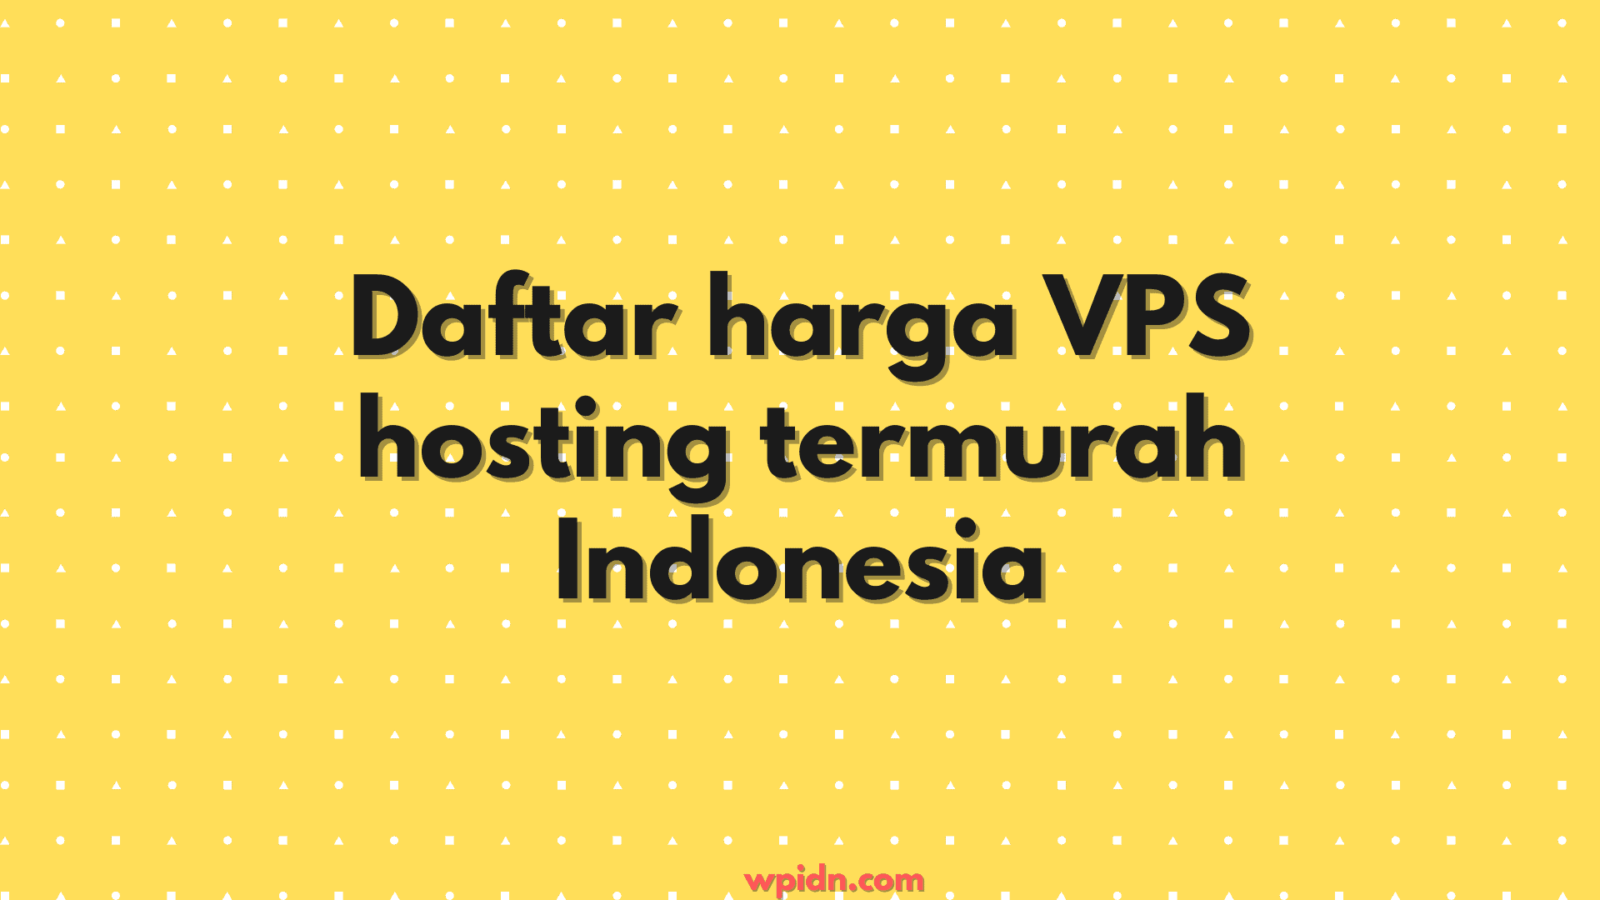 Daftar harga VPS hosting termurah Indonesia (2021)